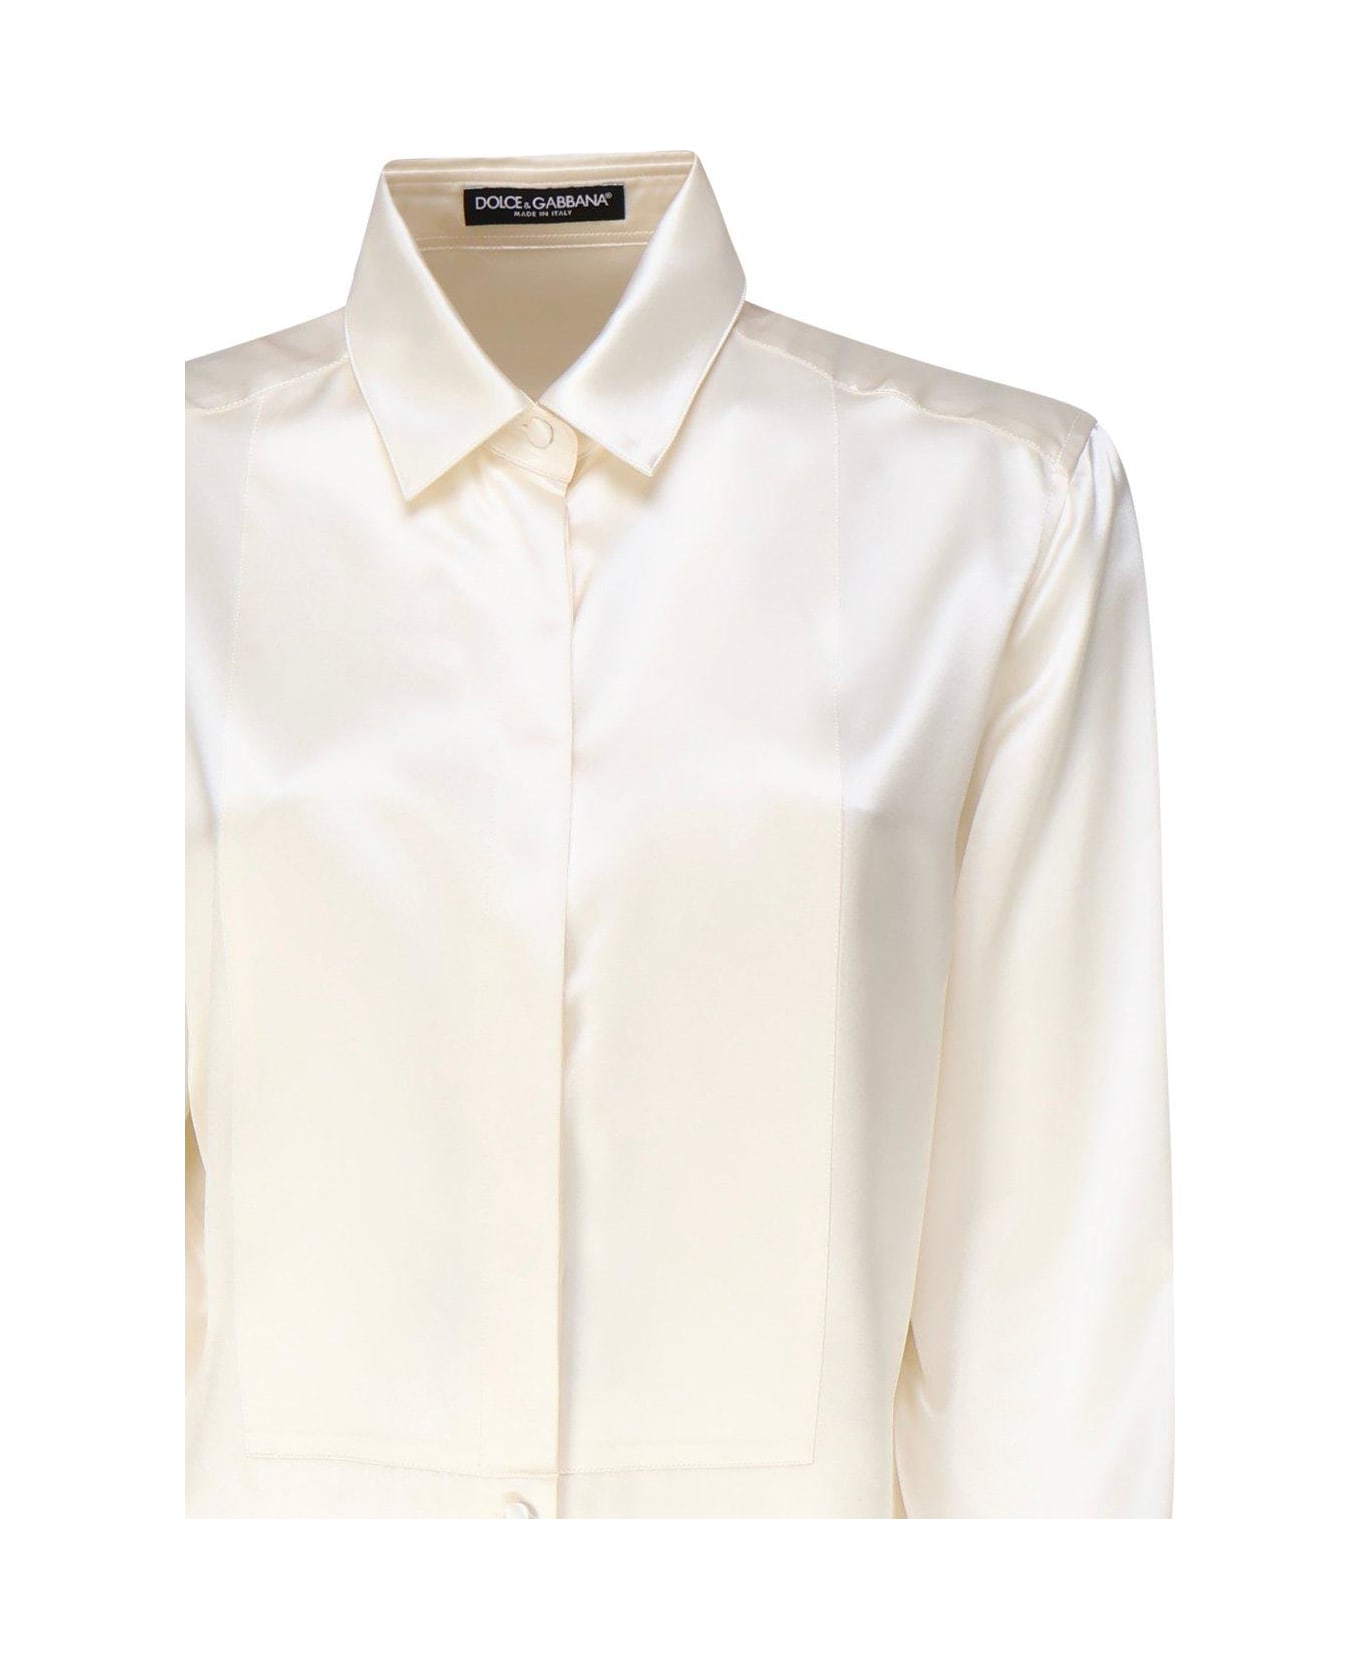 Dolce & Gabbana Long-sleeved Satin Shirt - Bianco シャツ